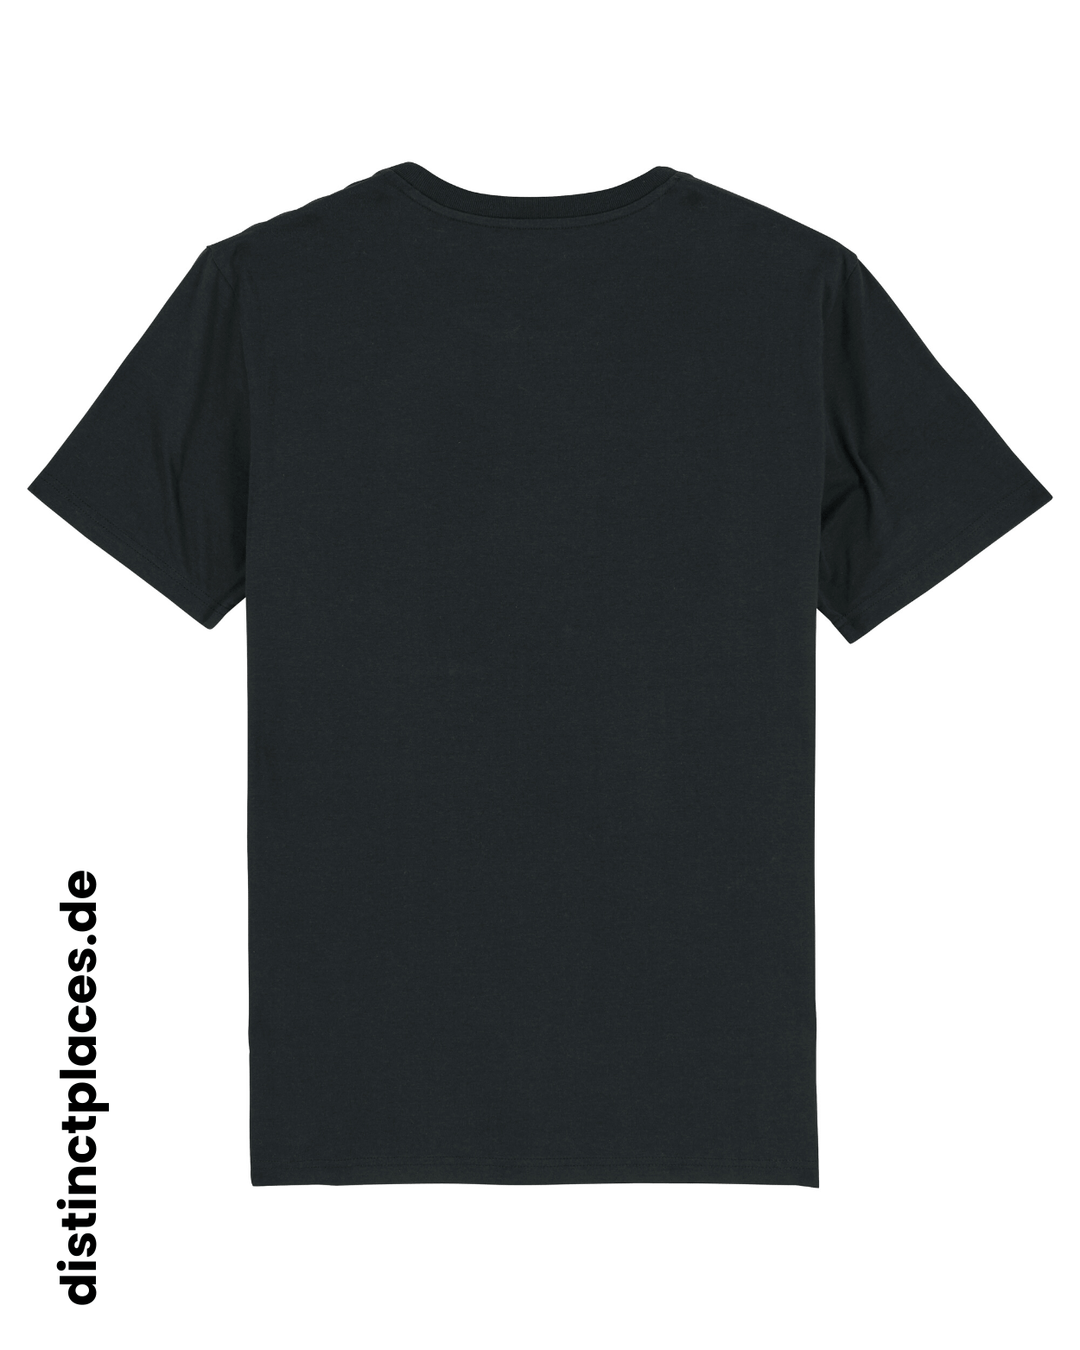 Schwarzes fairtrade, vegan und bio-baumwoll T-Shirt von hinten mit einem minimalistischem weißen Logo, beziehungsweise Wappen und Schriftzug für Bayern